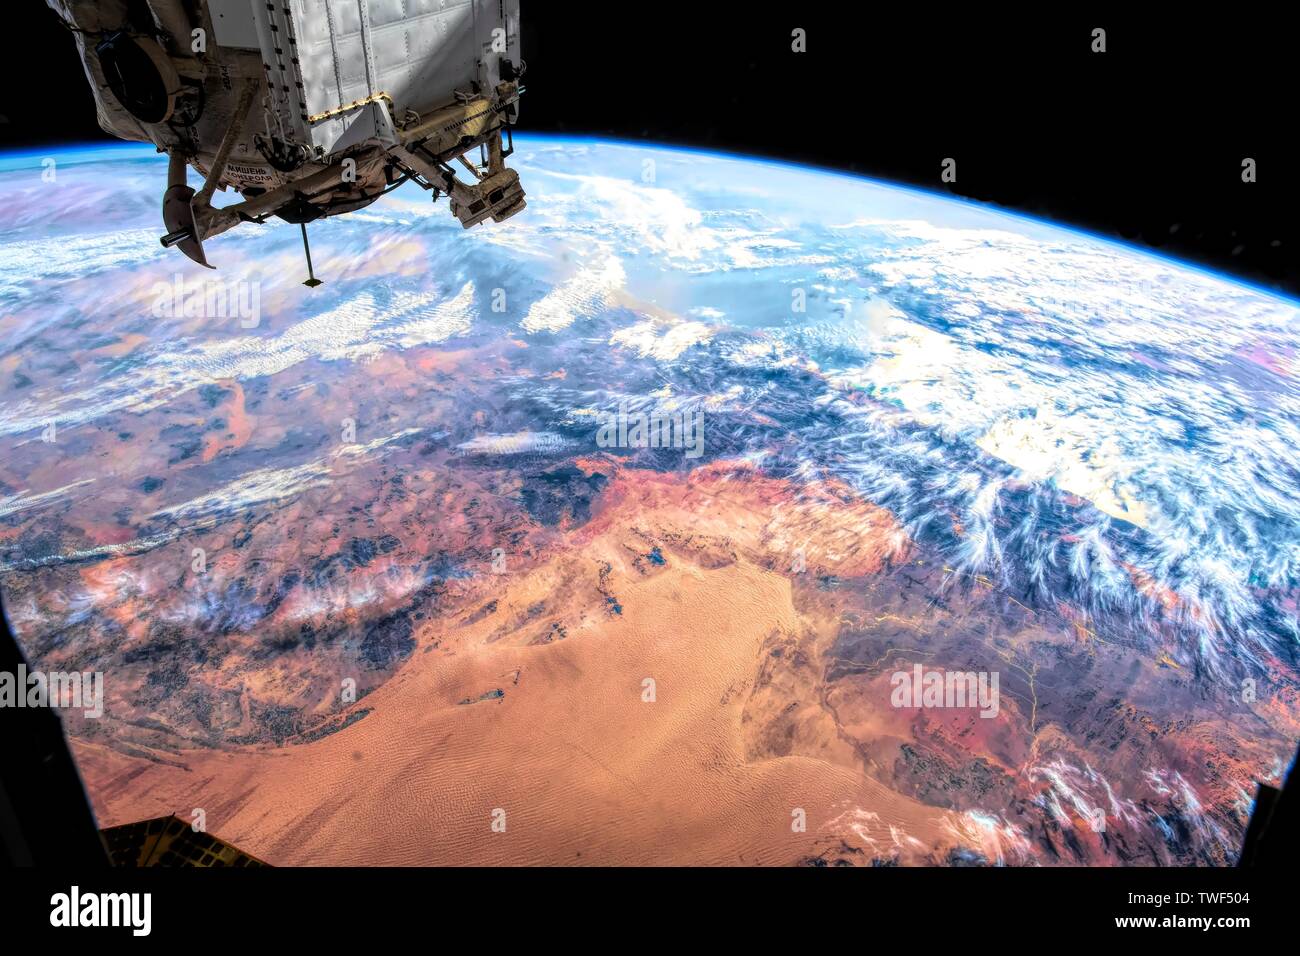 La bellezza della natura del nostro pianeta terra visto dalla Stazione Spaziale Internazionale (ISS). L'immagine è un dominio pubblico handout dalla NASA. Il contributo Foto Stock